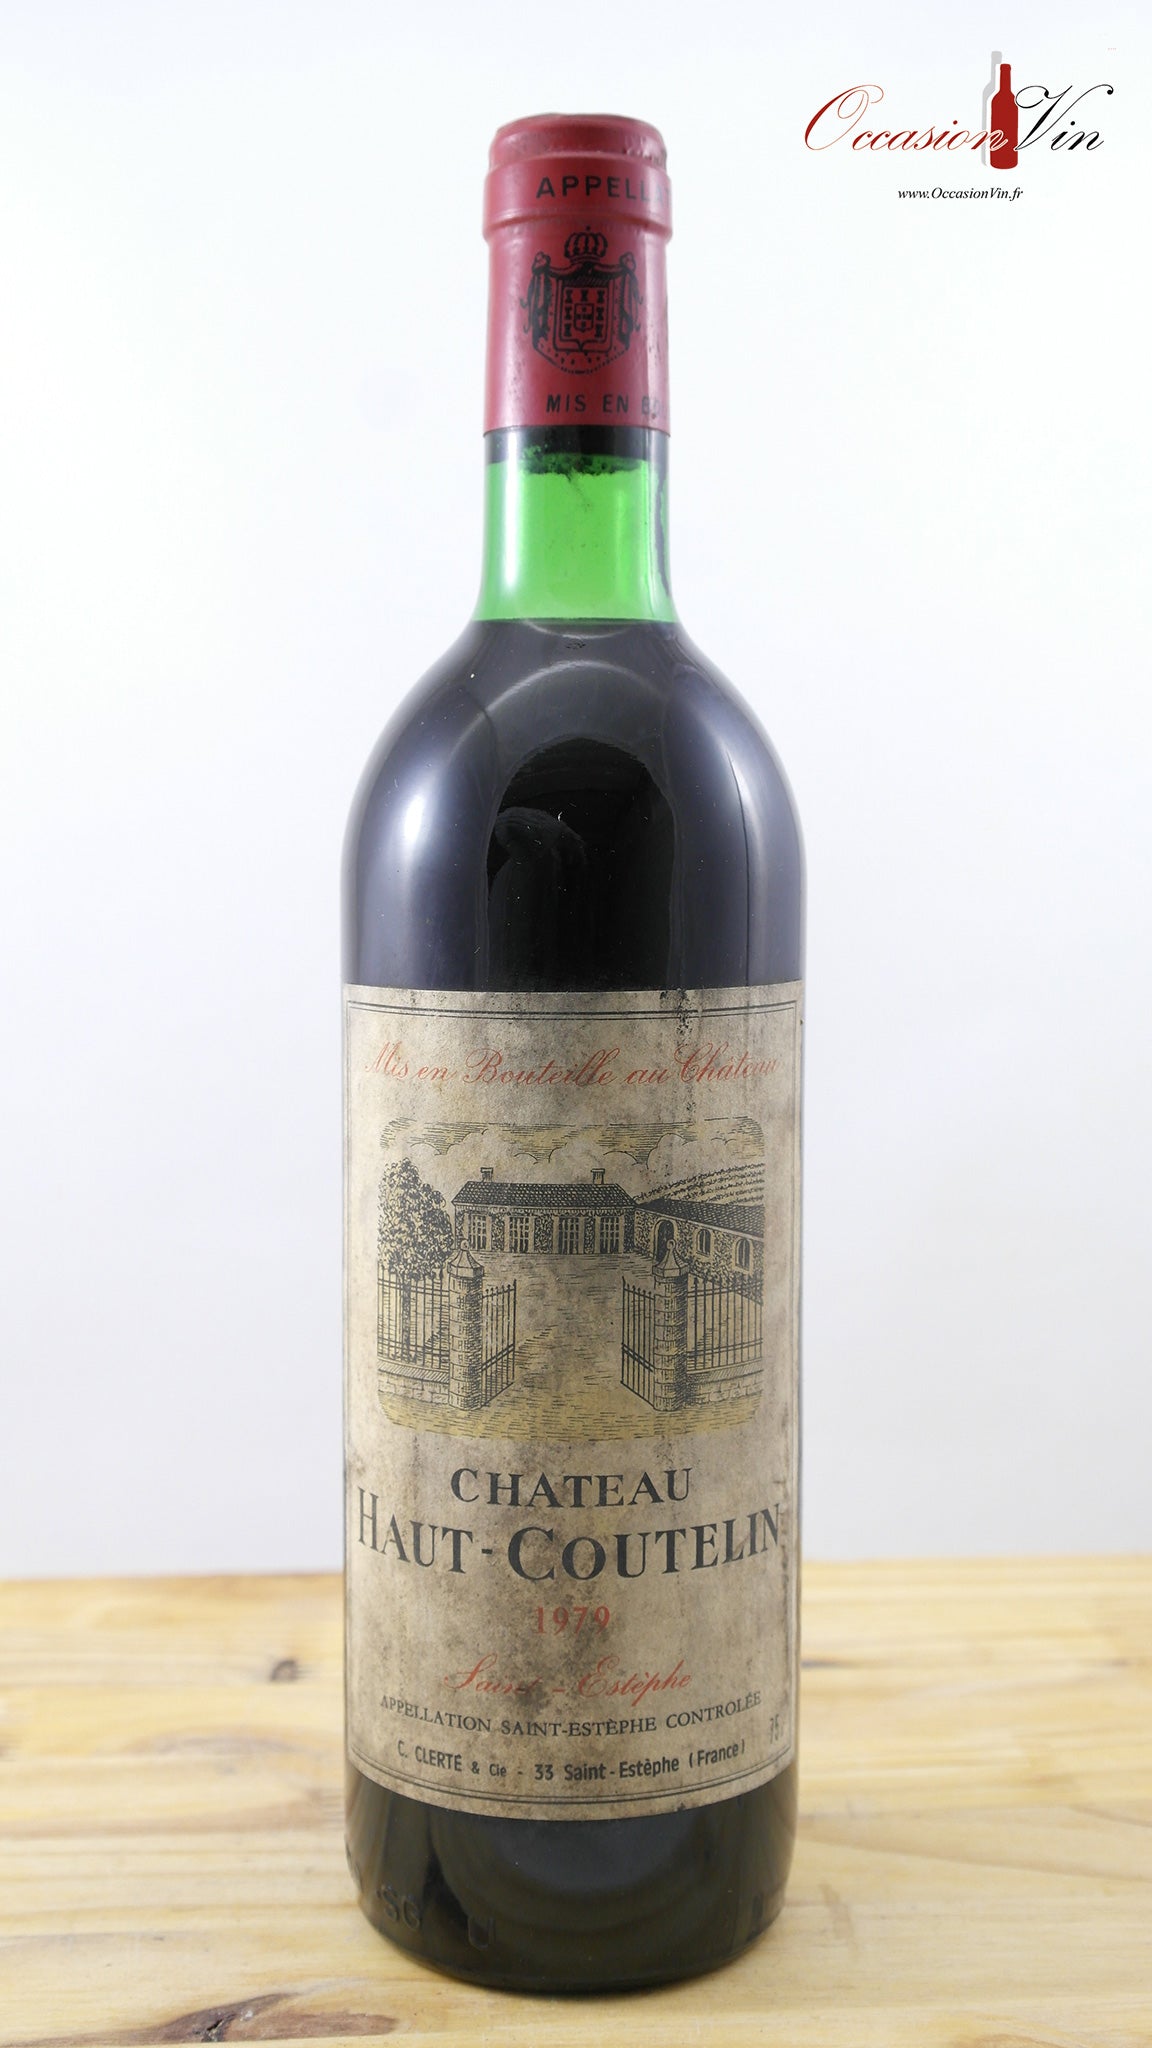 Château Haut-Coutelin ELA Vin 1979